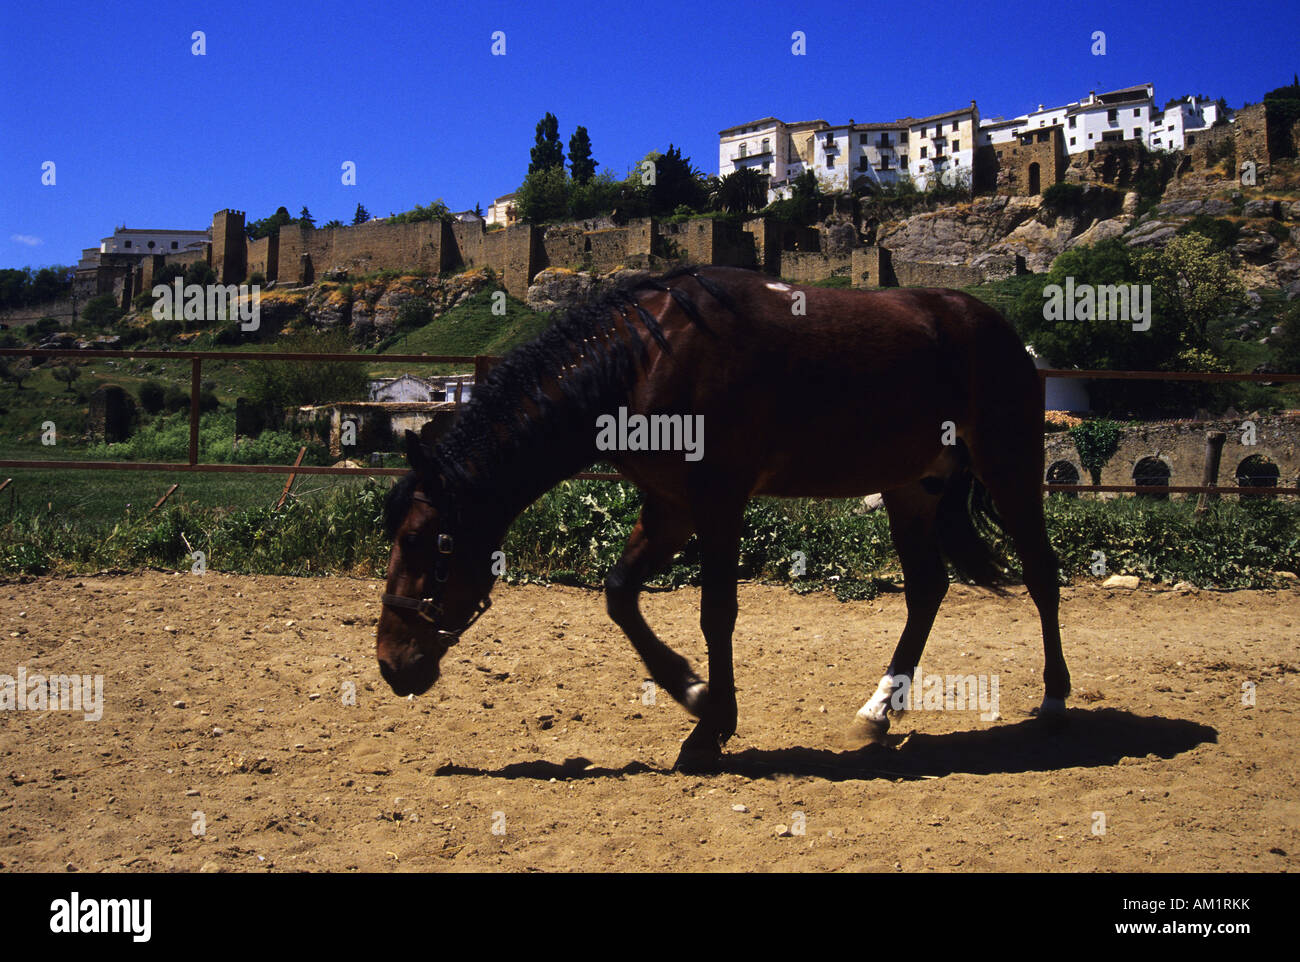 Horse RONDA Malaga province Andalusia region Spain Stock Photo